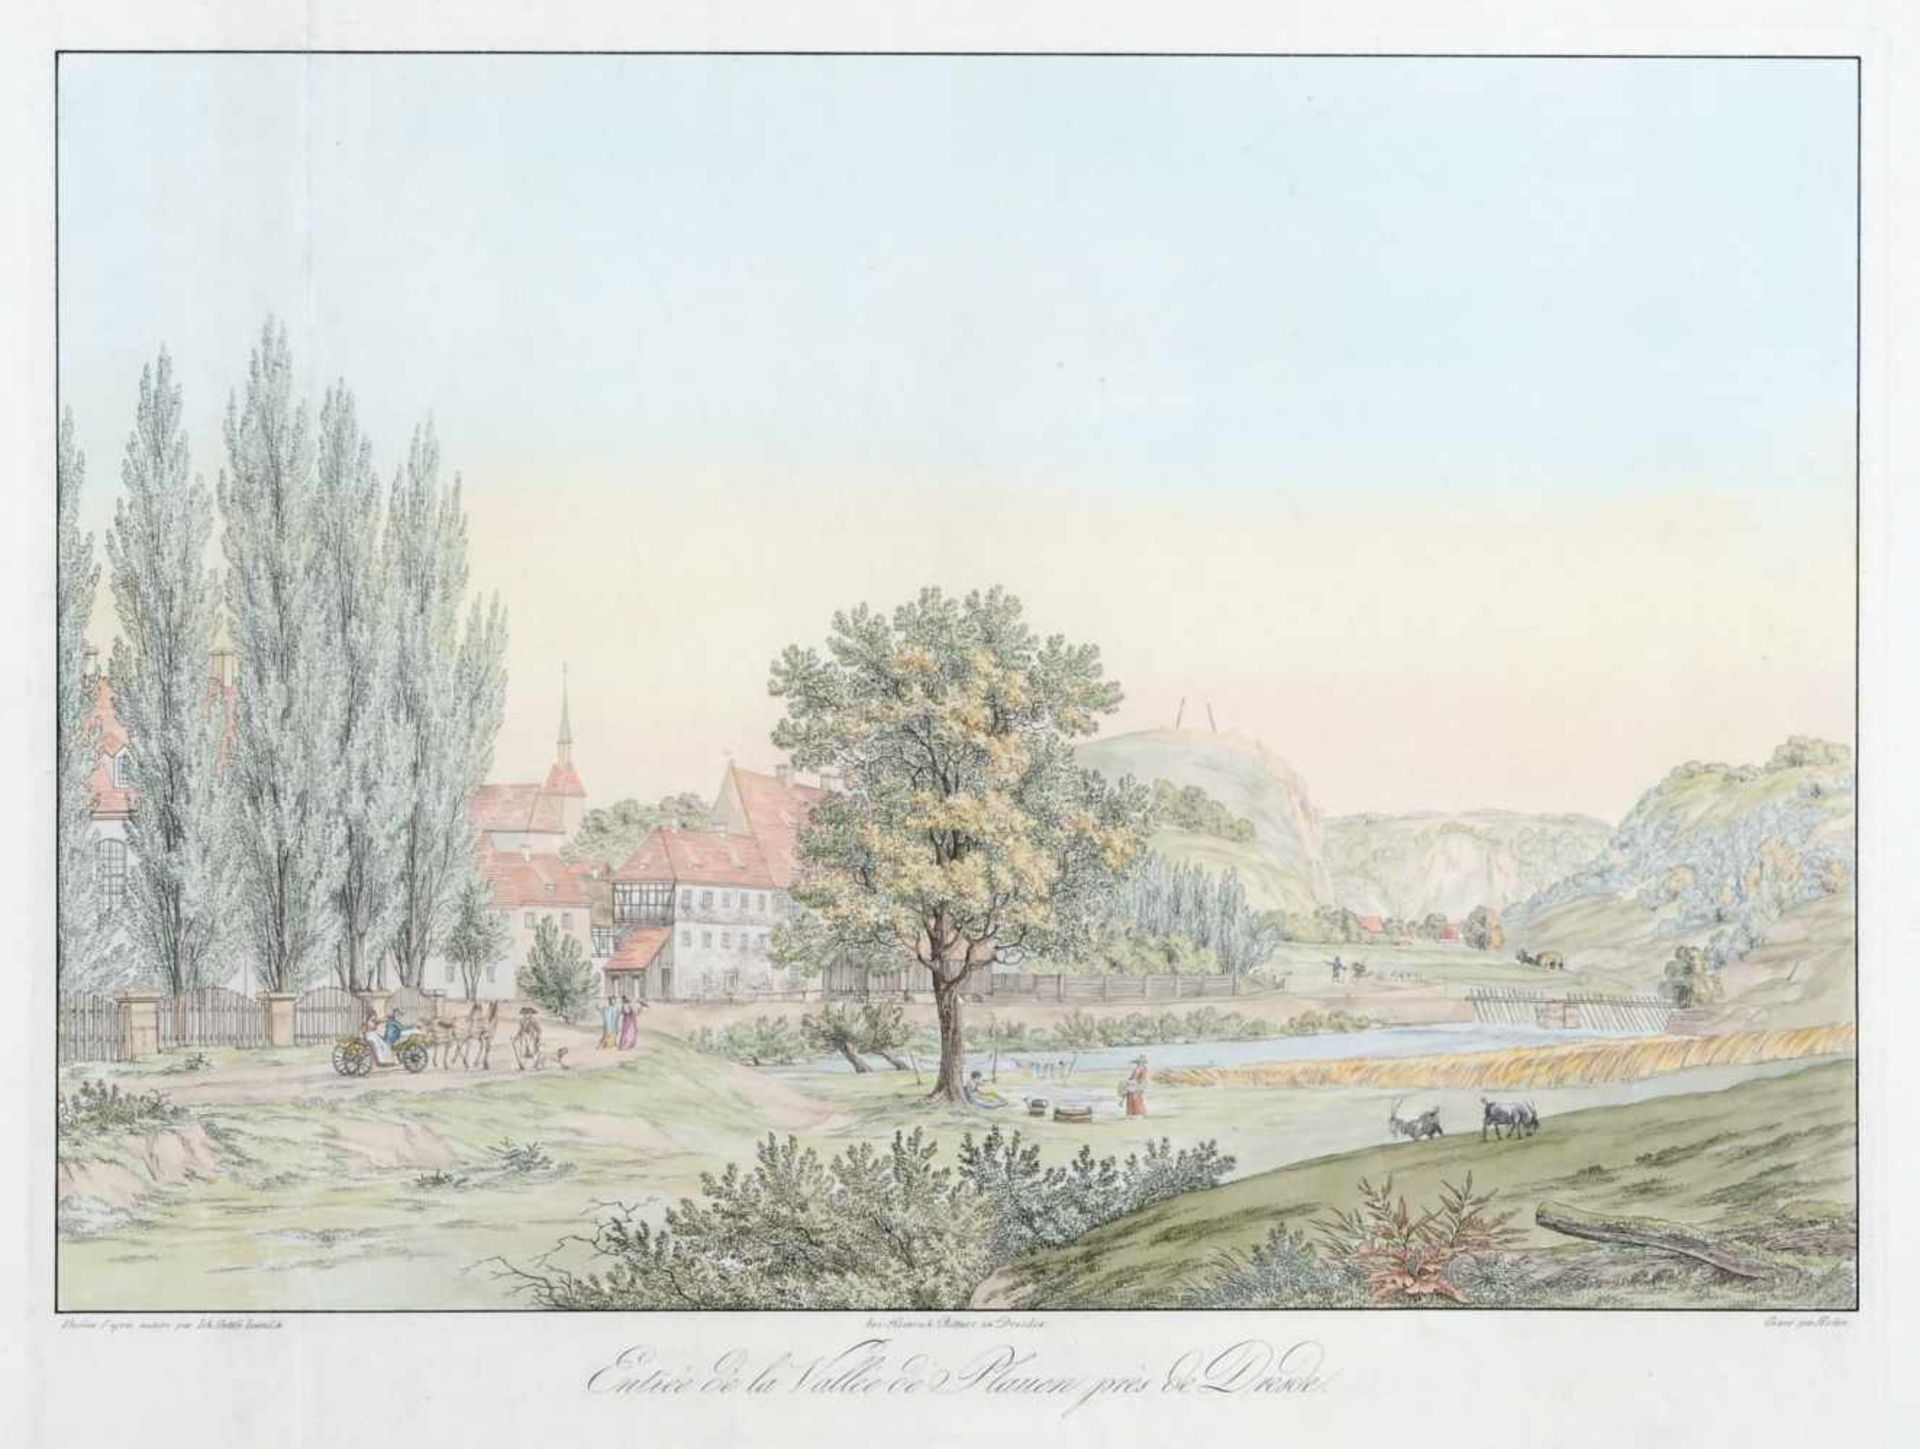 Christian Gottlob Hammer "Entrée de la Vallée de Plauen prés de Dresde". 1815. Kolorierte